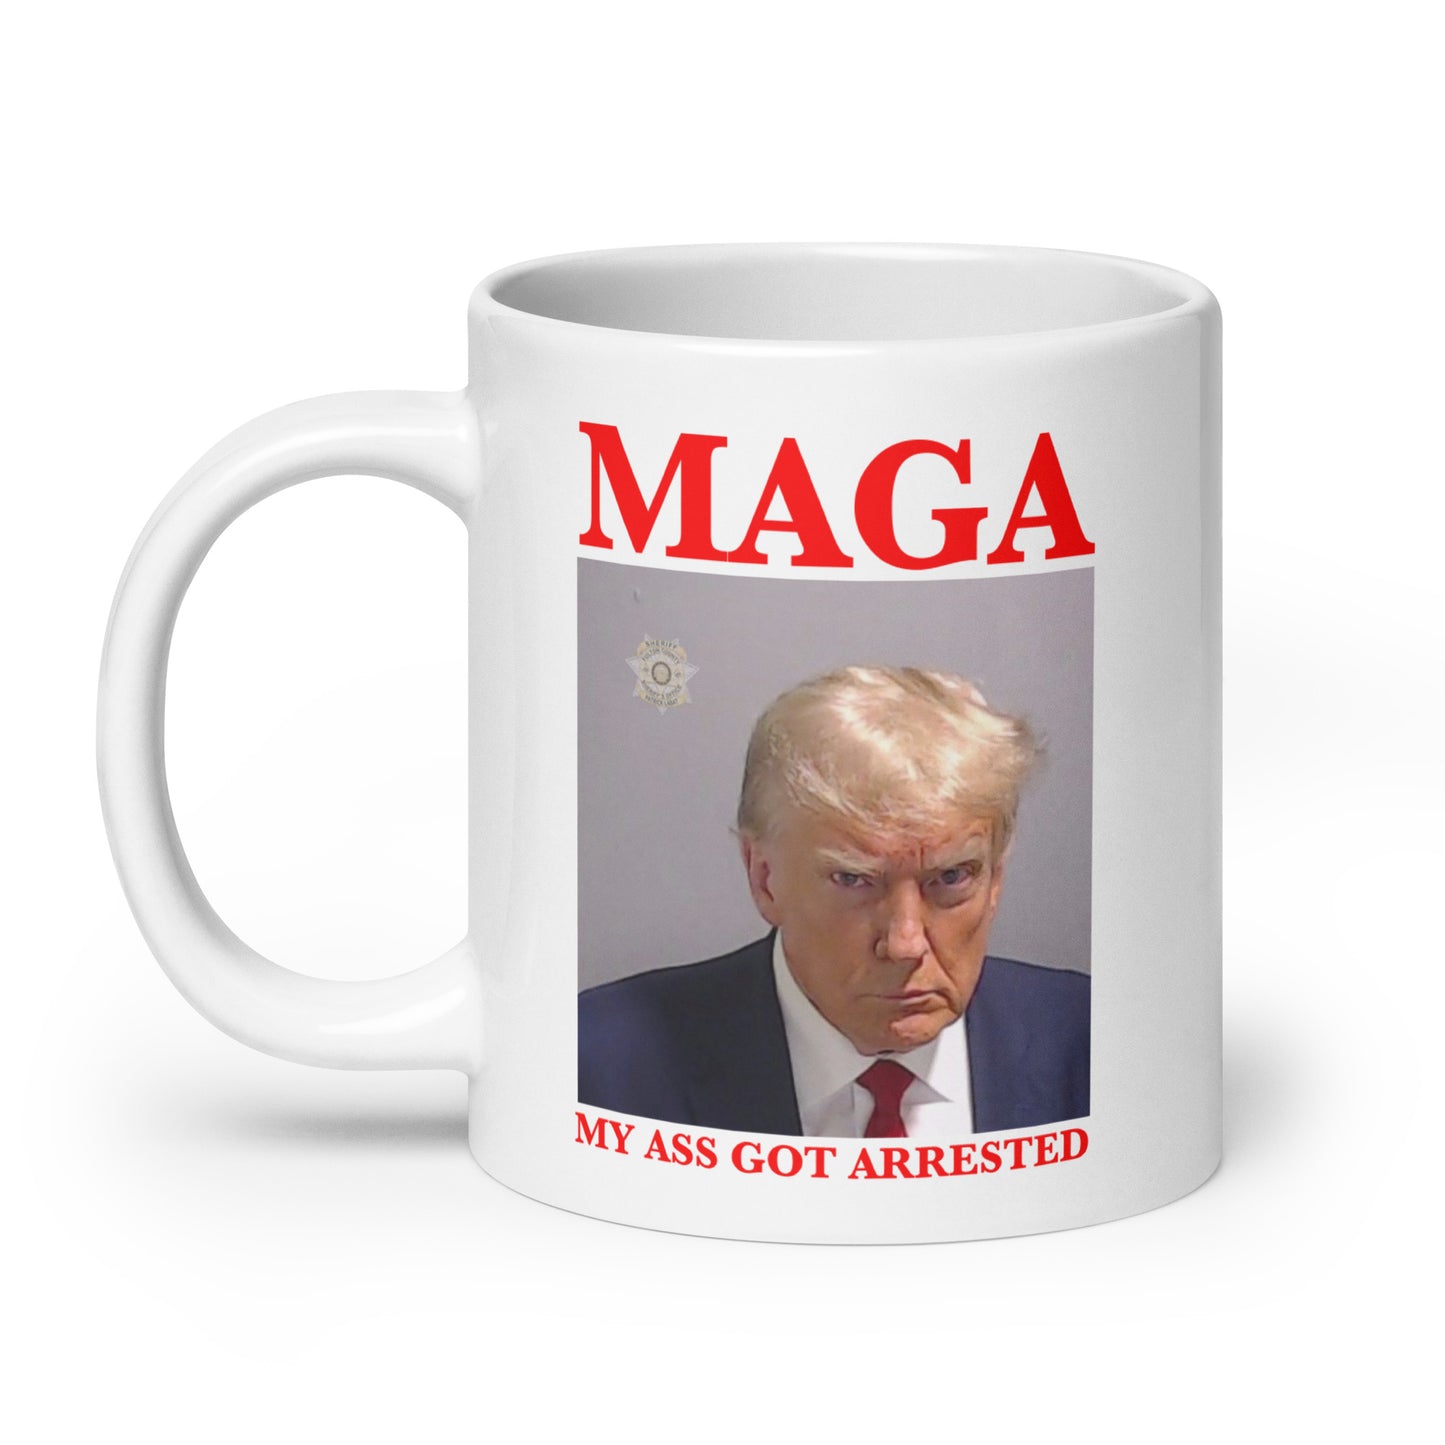 MAGA My Ass Got Arrested (Trump Mugshot) mug